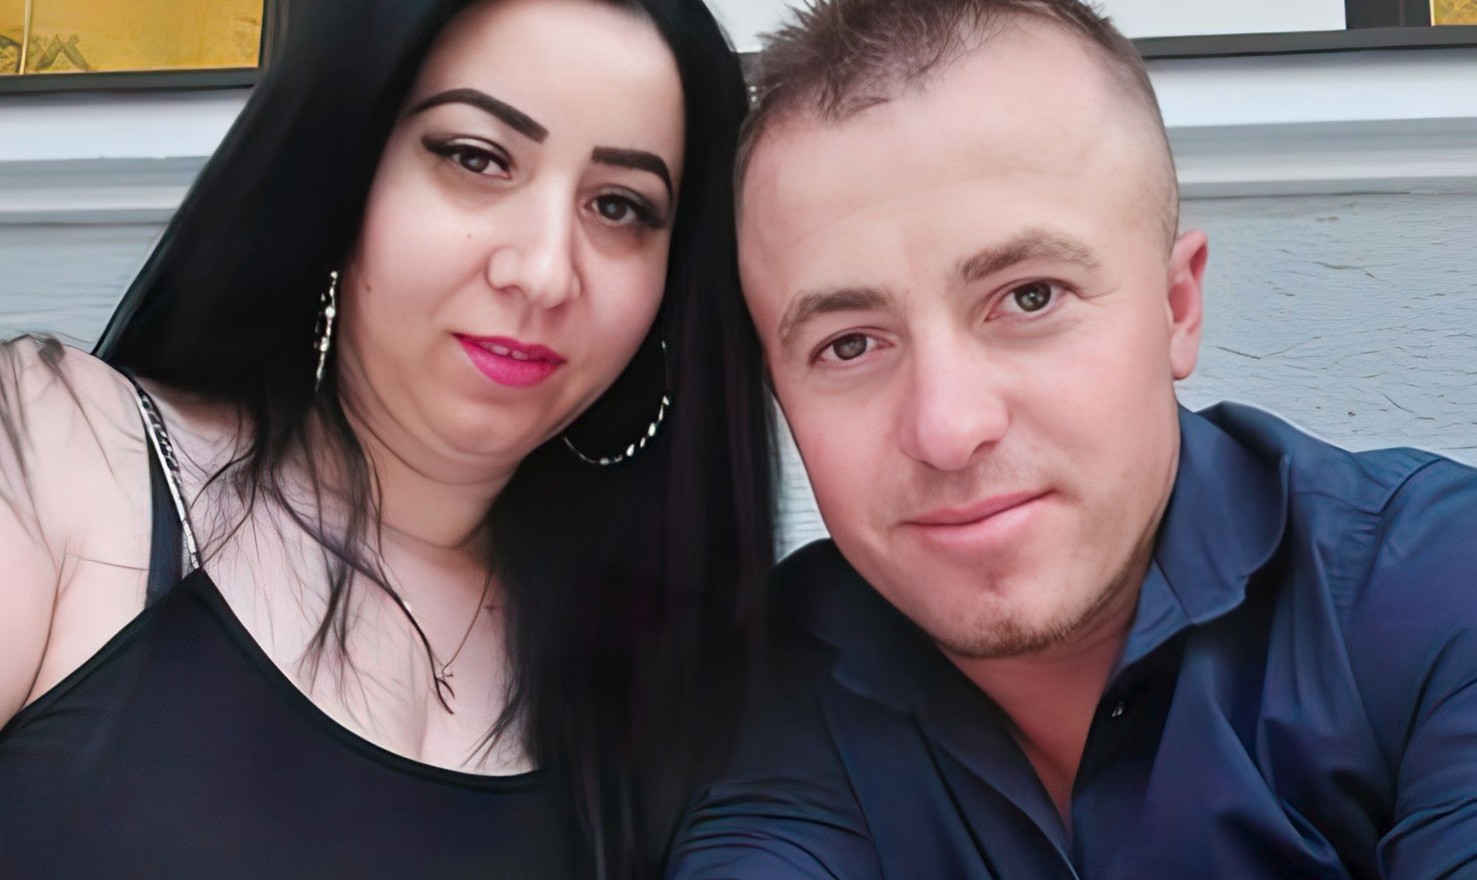 Vrau gruan rumune dhe u arratis në Shqipëri, vetëdorëzohet në polici 42-vjeçari shqiptar